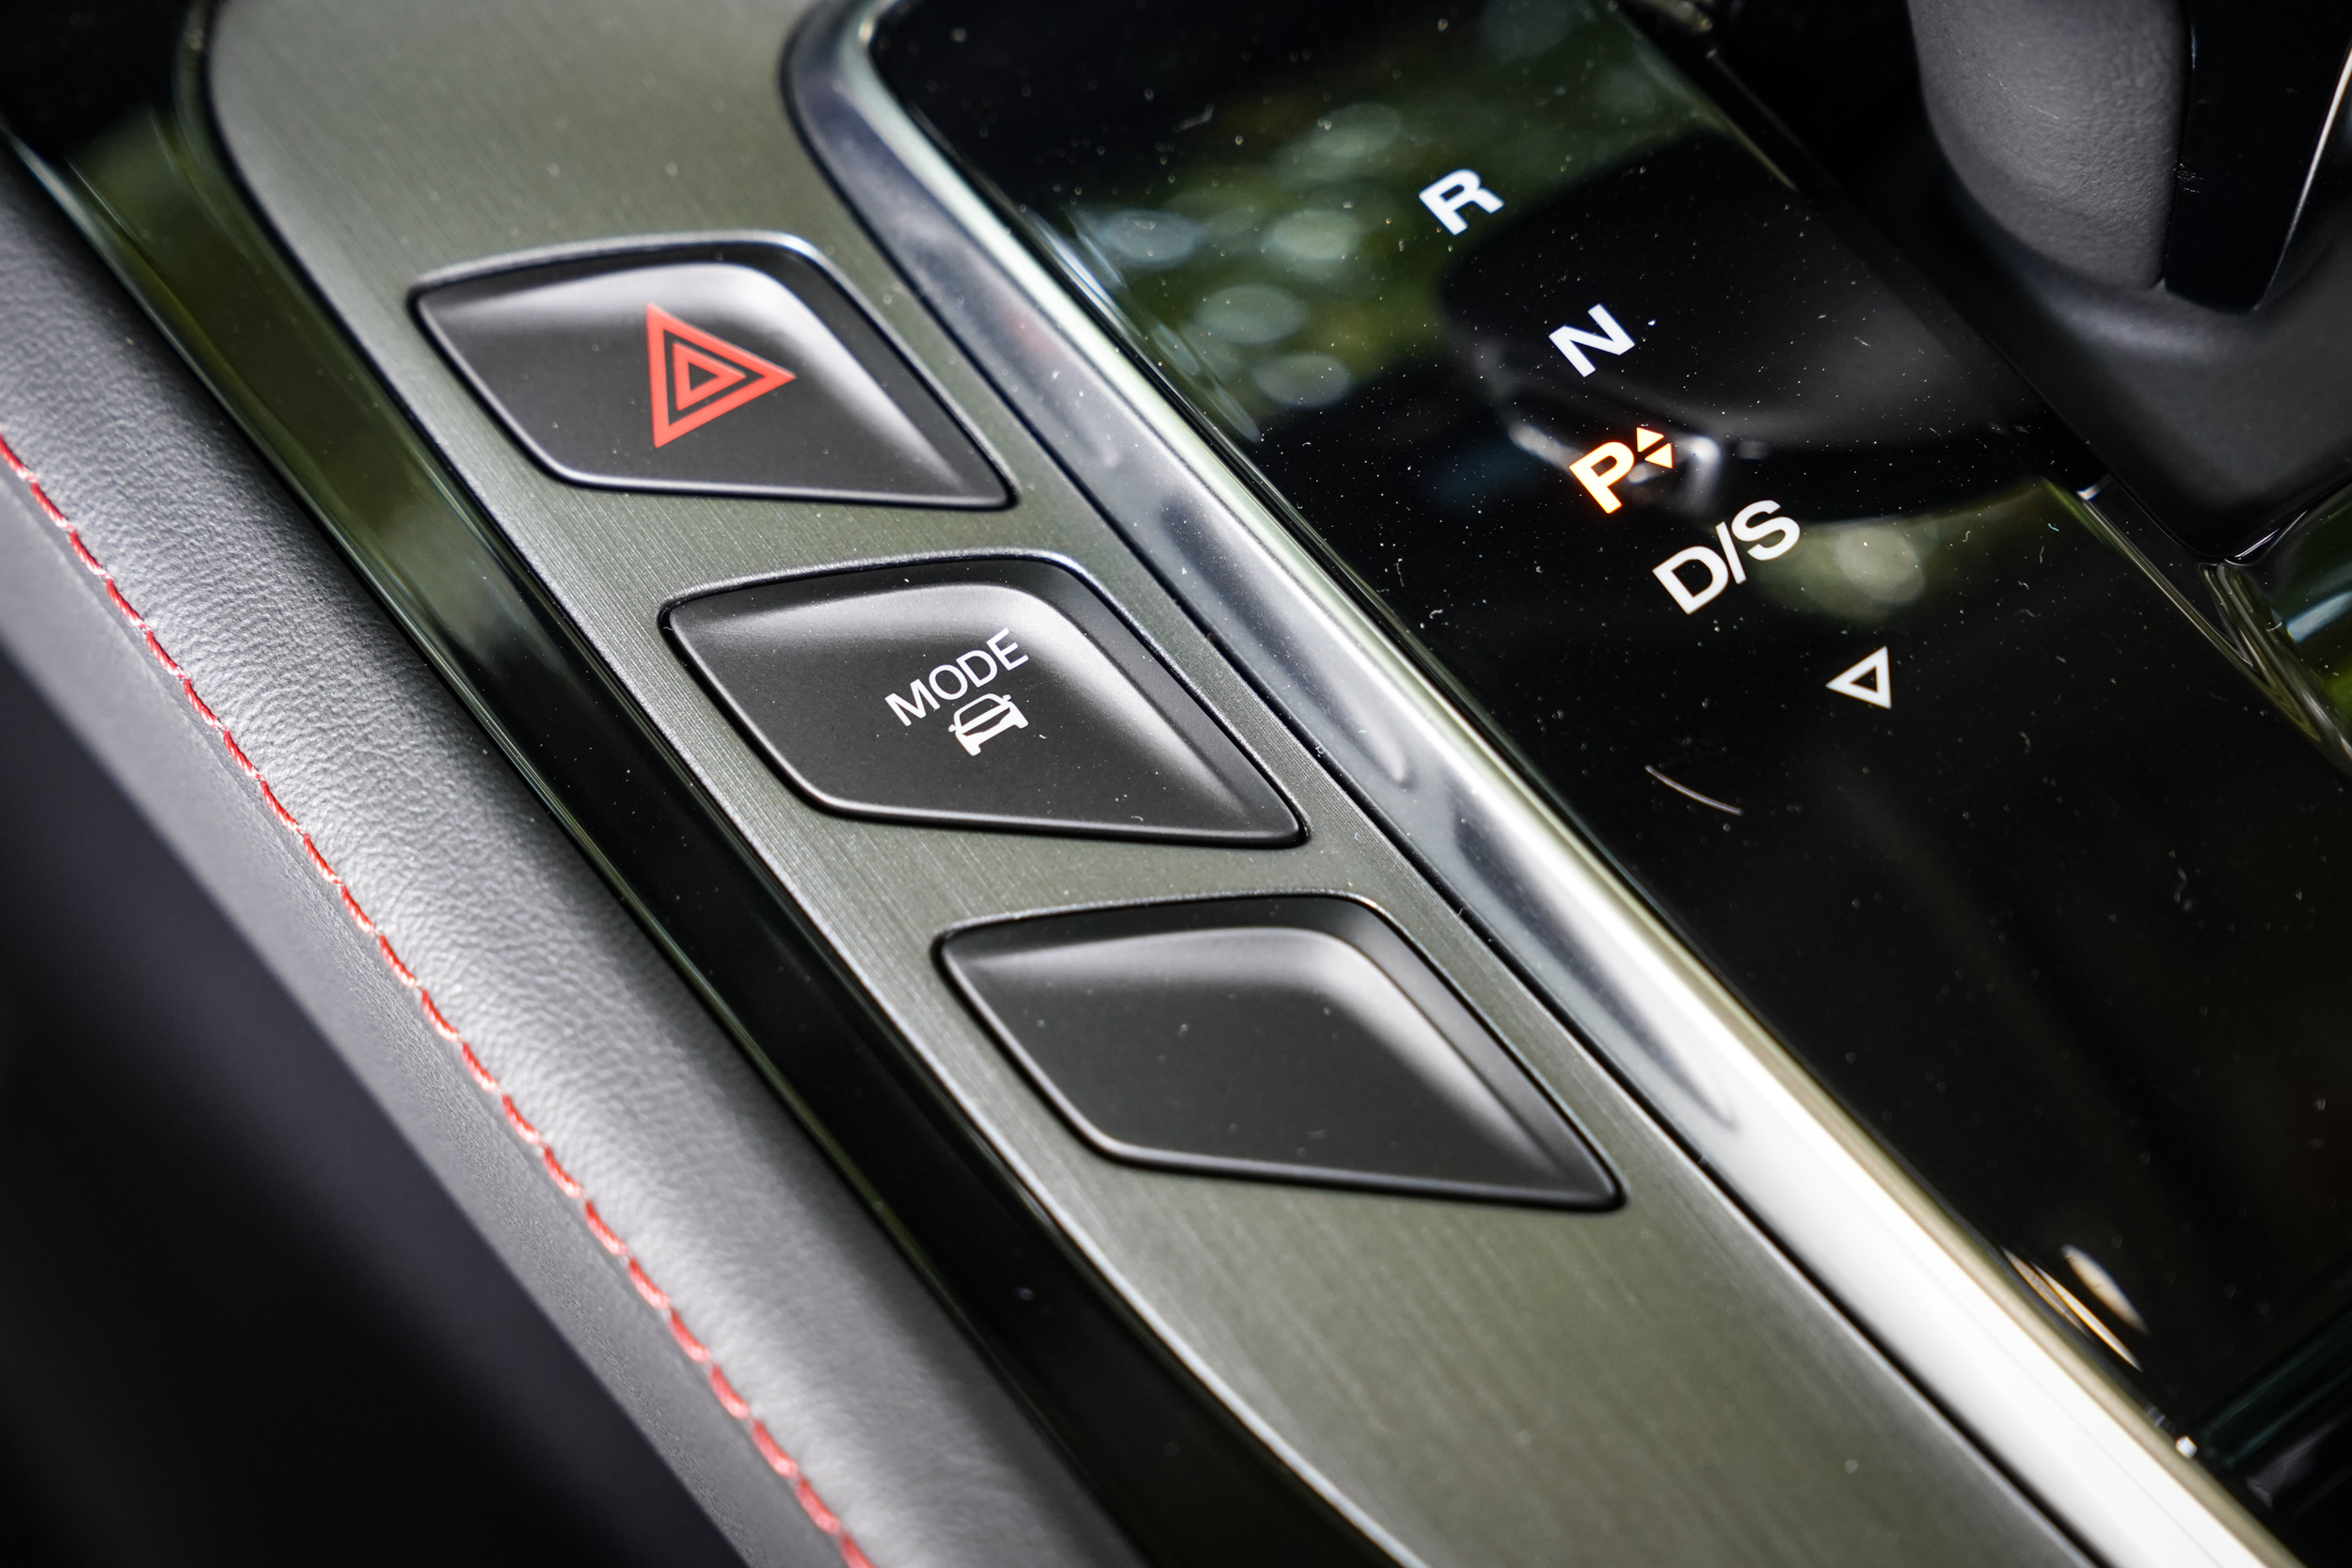 除了方向盤上的 SuperSport 模式以外，排檔座左側另有駕駛模式供切換，包含 Eco、Normal、Soprt 與 Custom 等多種選擇。